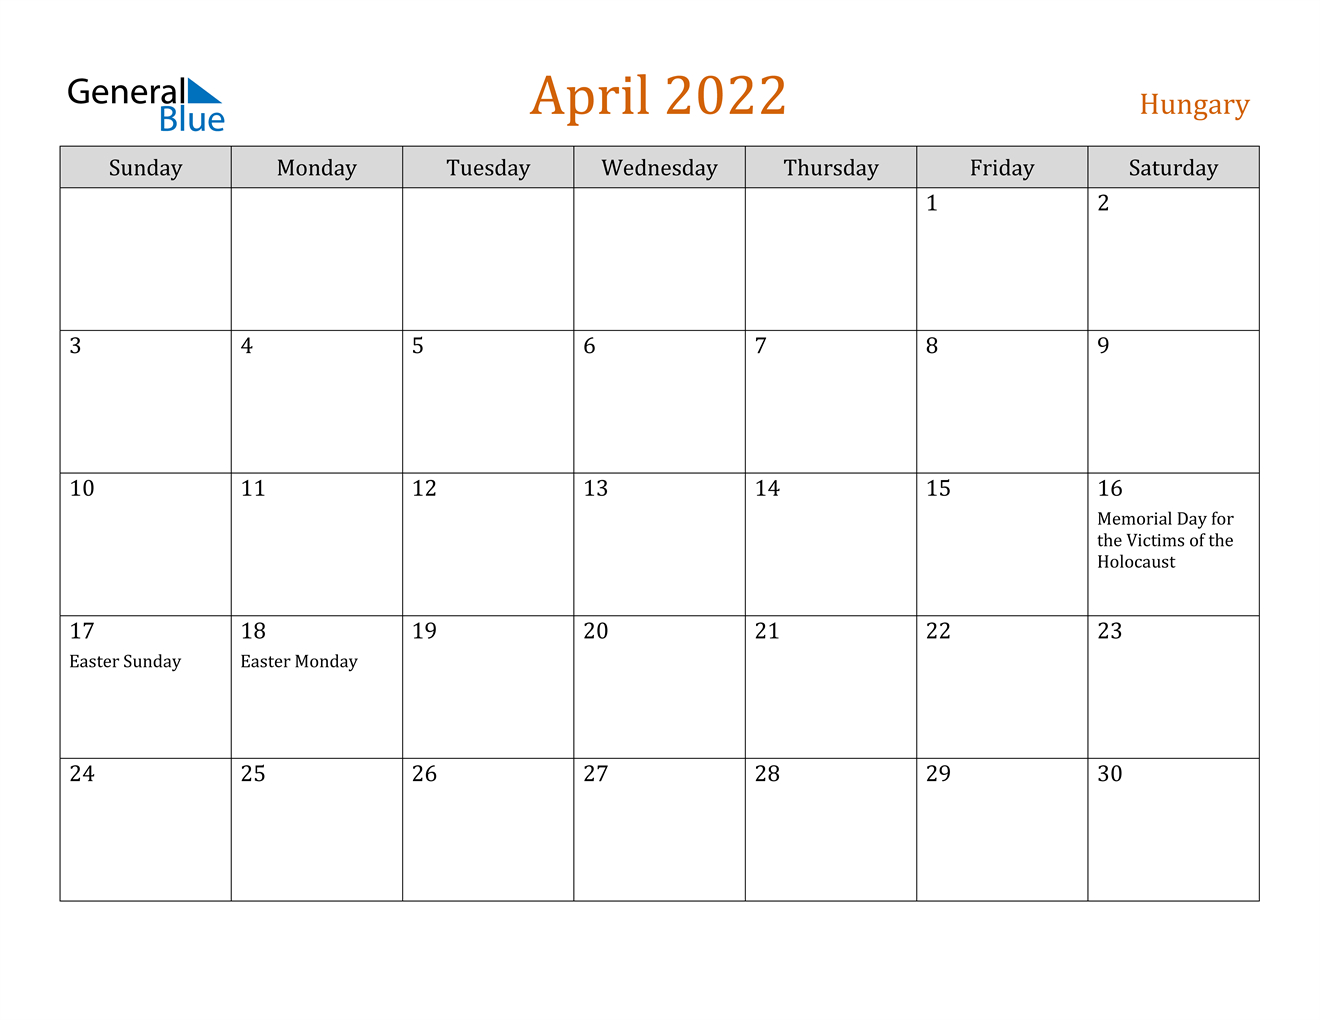 Hungary April 2022 Calendar With Holidays